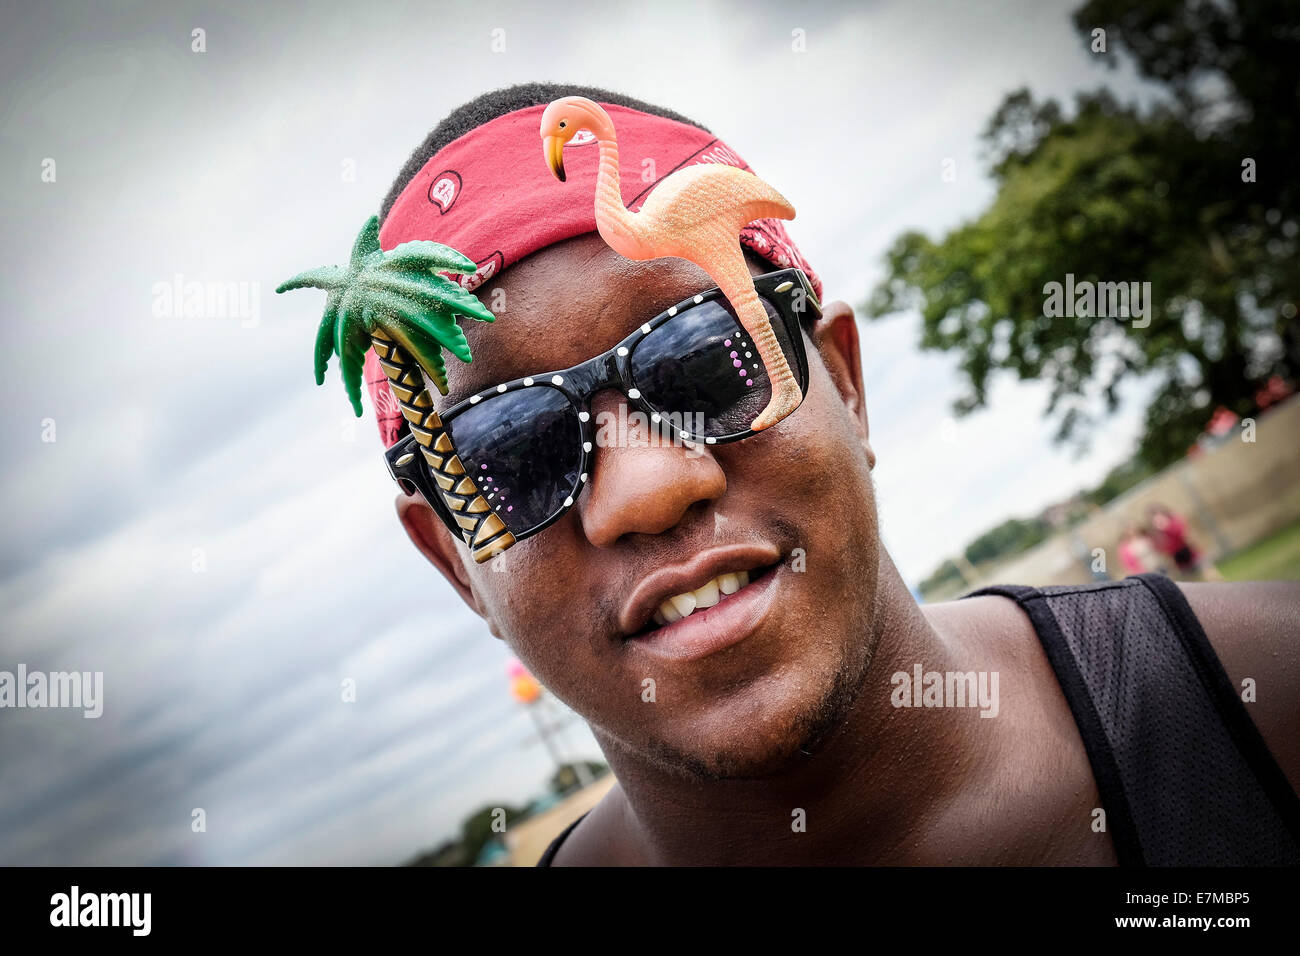 Un festivalgoer indossando occhiali da sole di novità al Festival Brownstock in Essex. Foto Stock